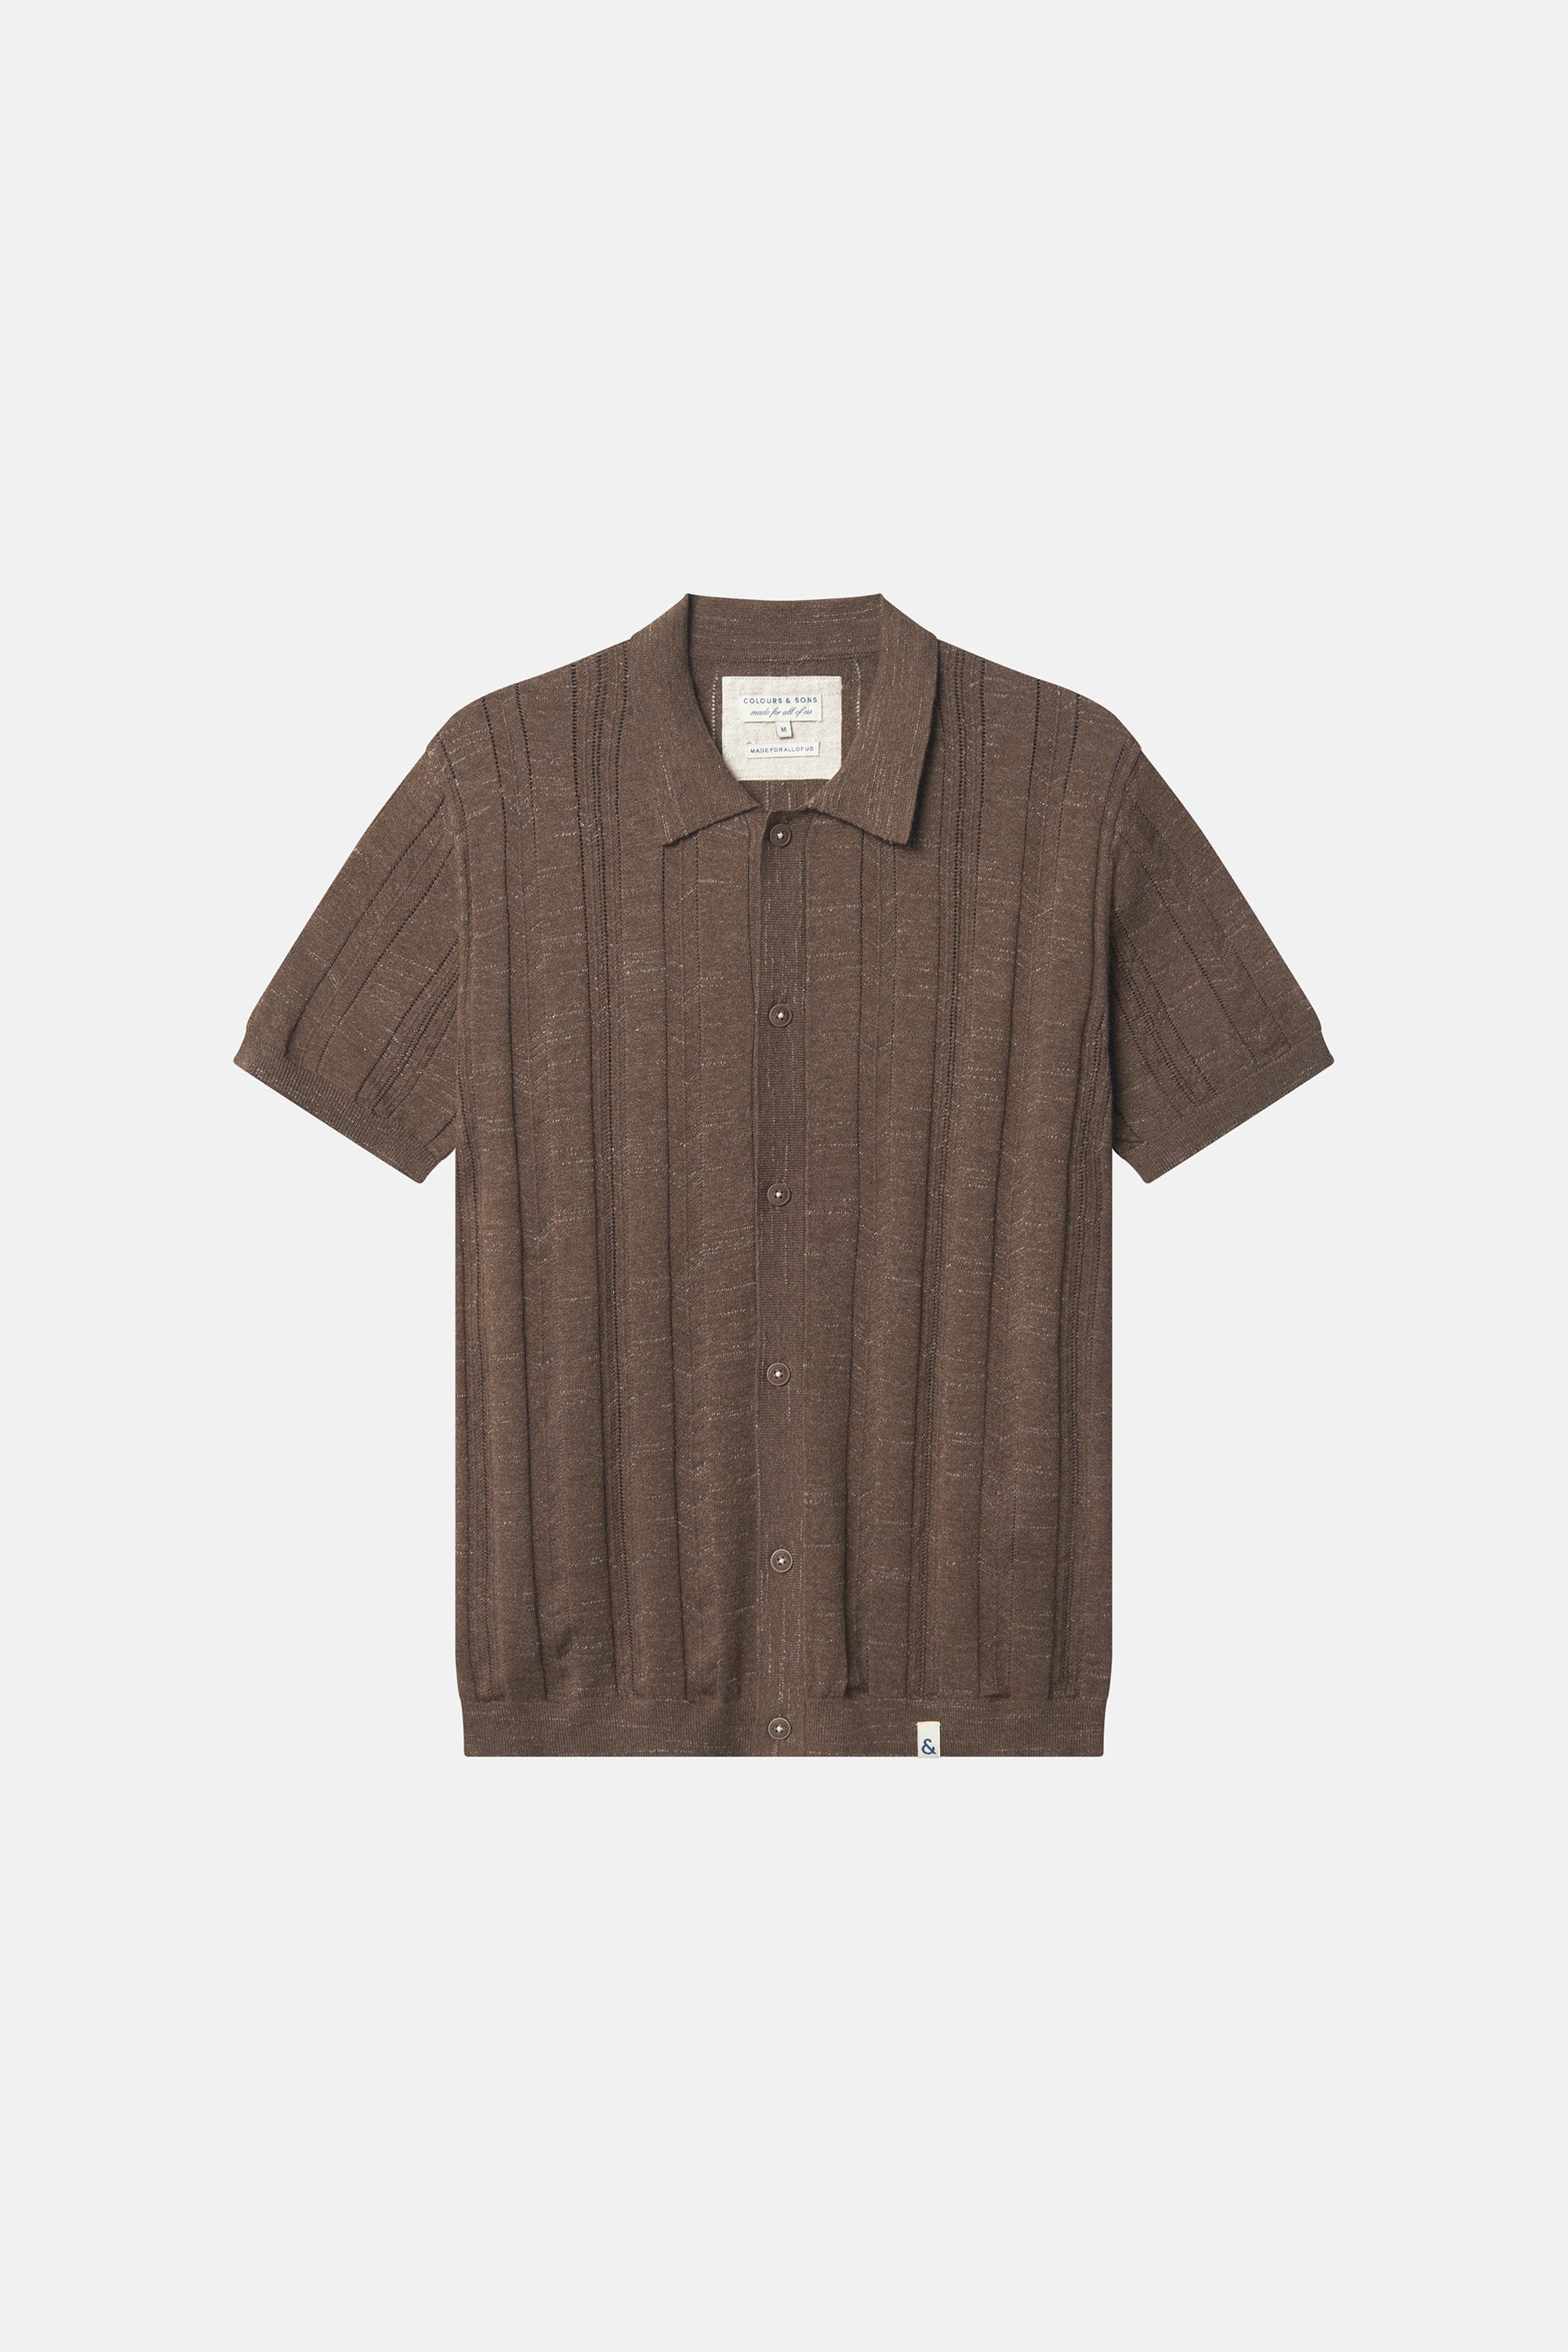 Herren Strick Hemd, braun, aus 80% Baumwolle 20 % Recyceltem Polyester von Colours & Sons